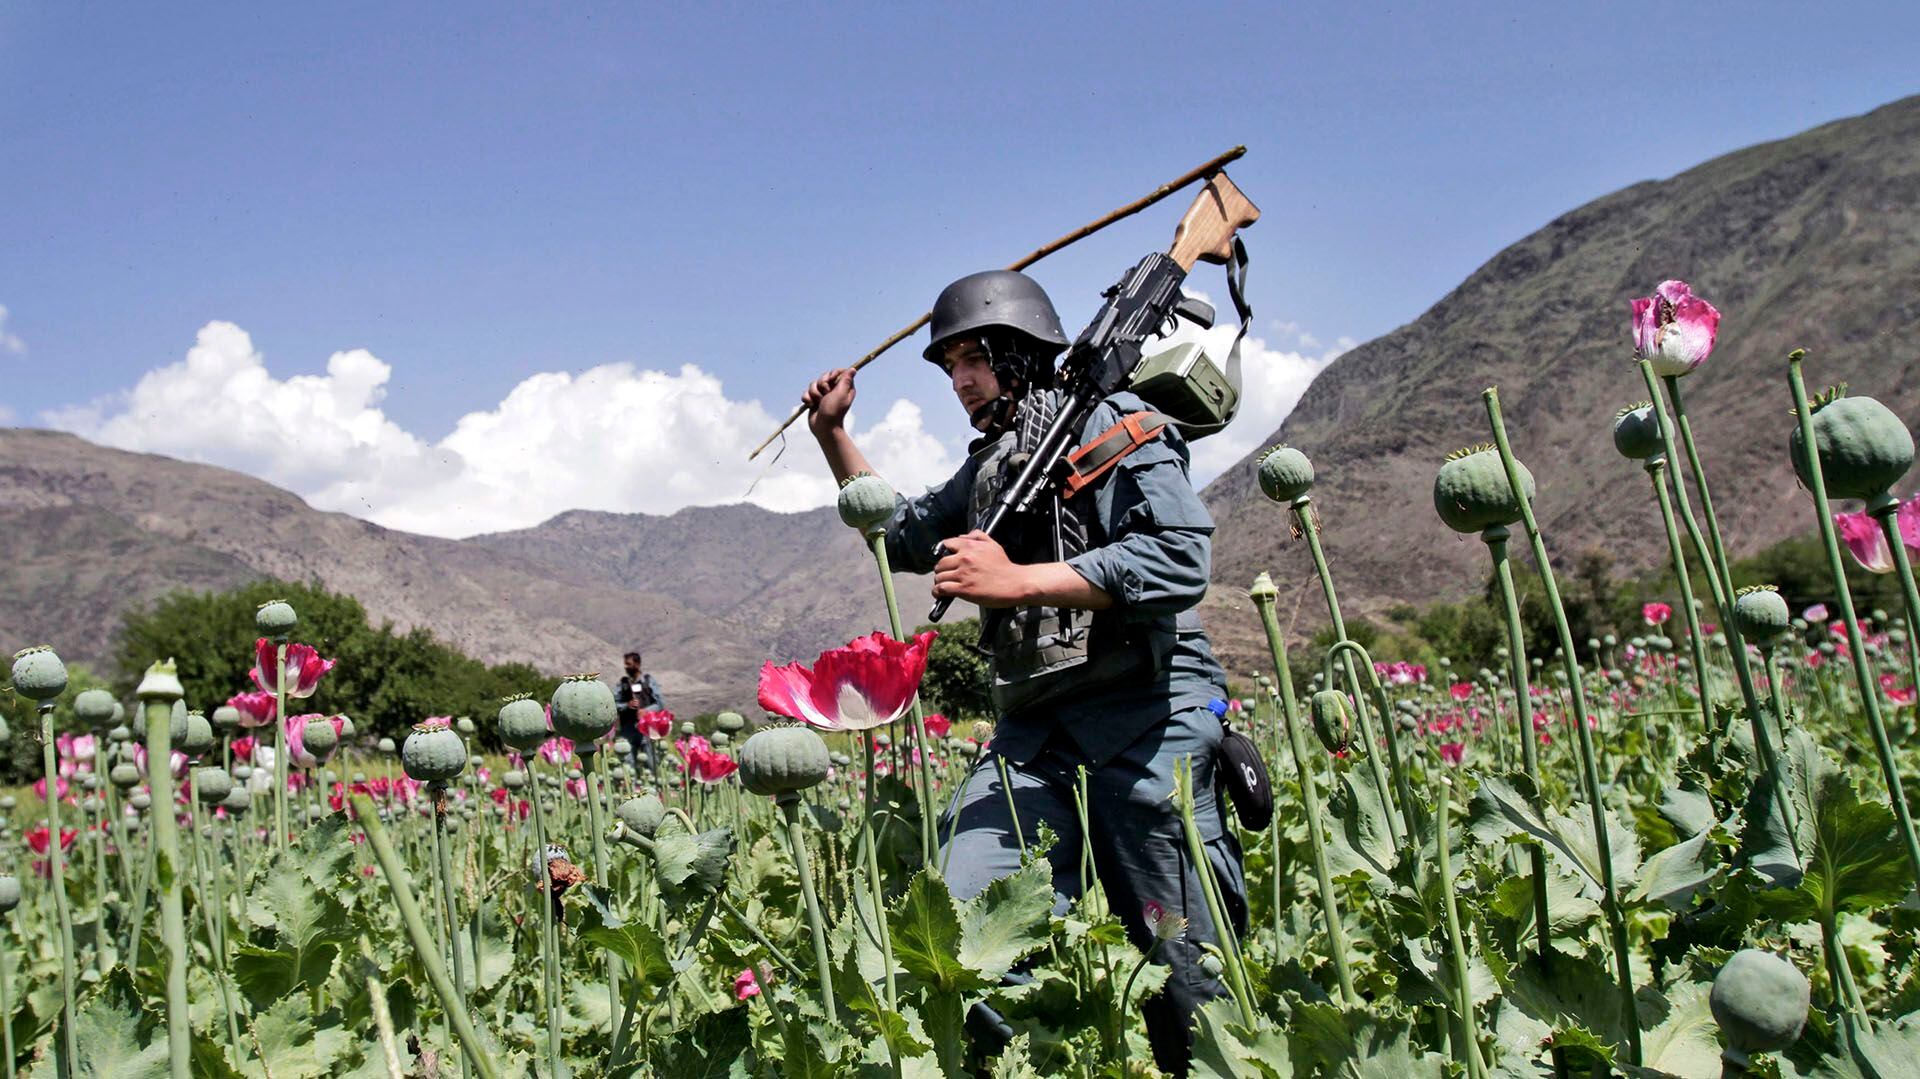 Los totales anuales de incautaciones de metanfetamina desde el interior de Afganistán aumentaron de menos de 100 kilogramos en 2019 a casi 2,700 kilogramos en 2021. (AP/Rahmat Gul) 
